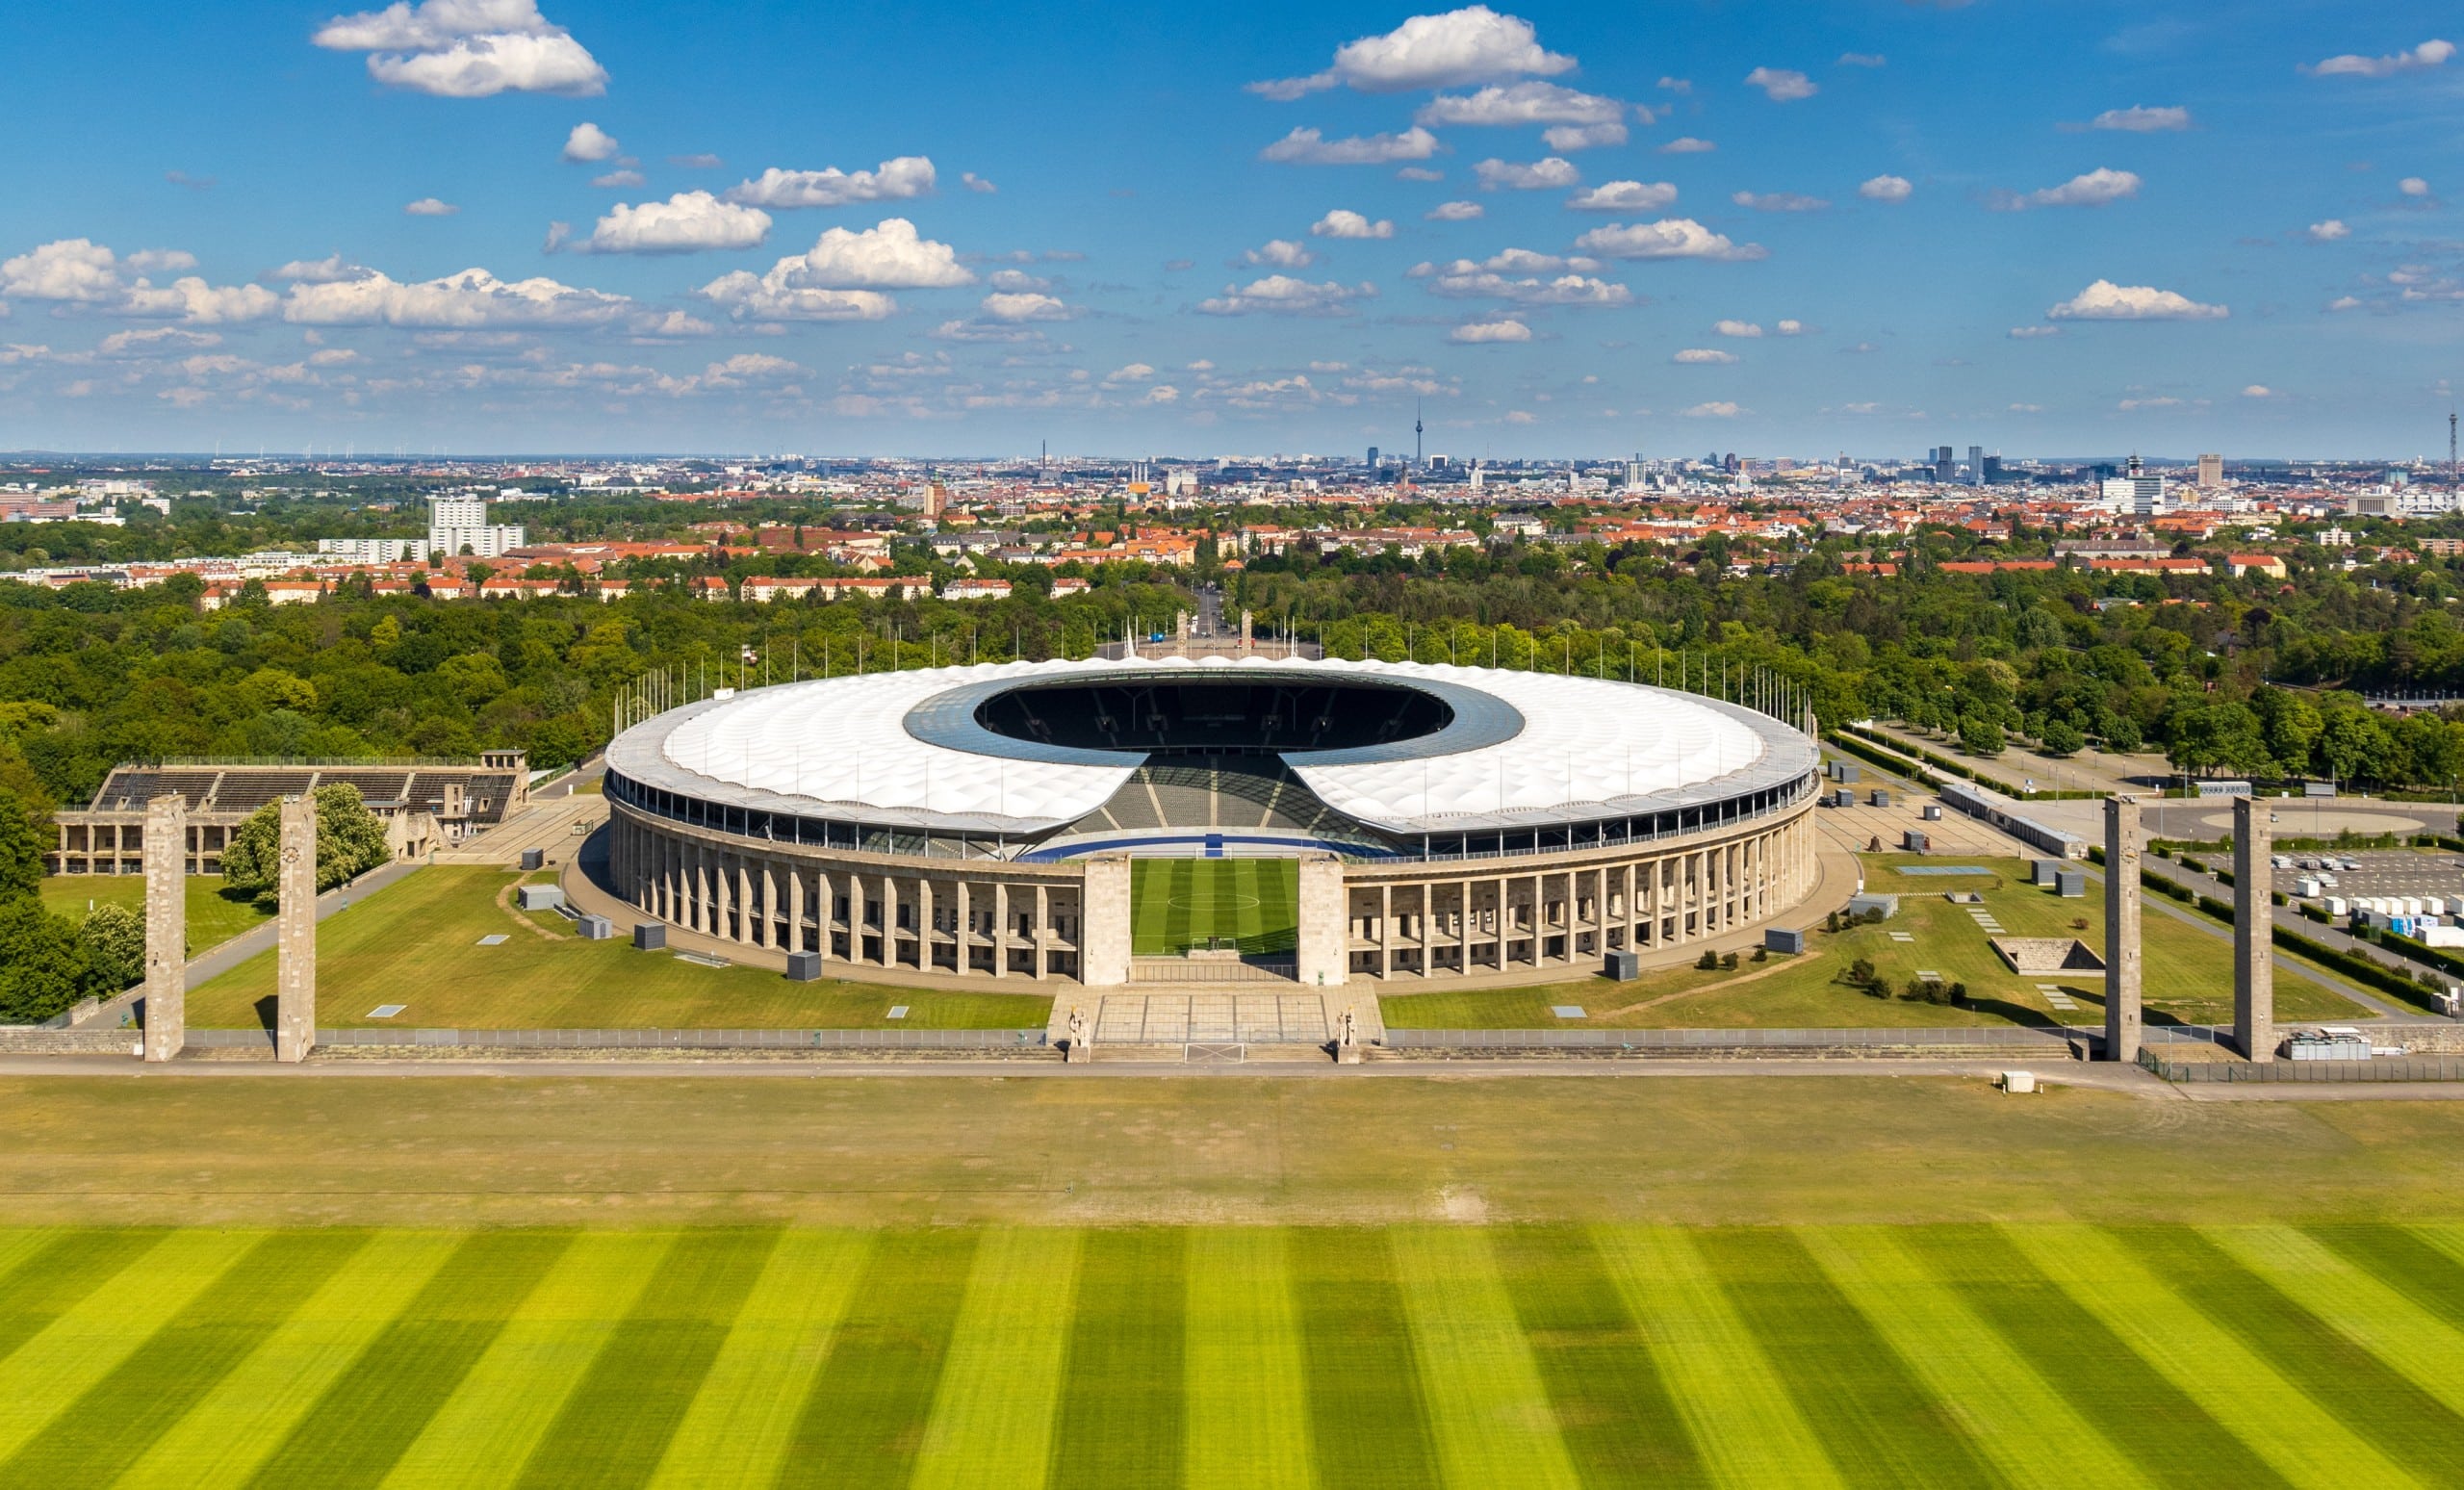 Blick auf das Olympiastadion Berlin im Jahr 2020. Bildquelle: Matthias Süßen, CC BY-SA 4.0 , via Wikimedia Commons